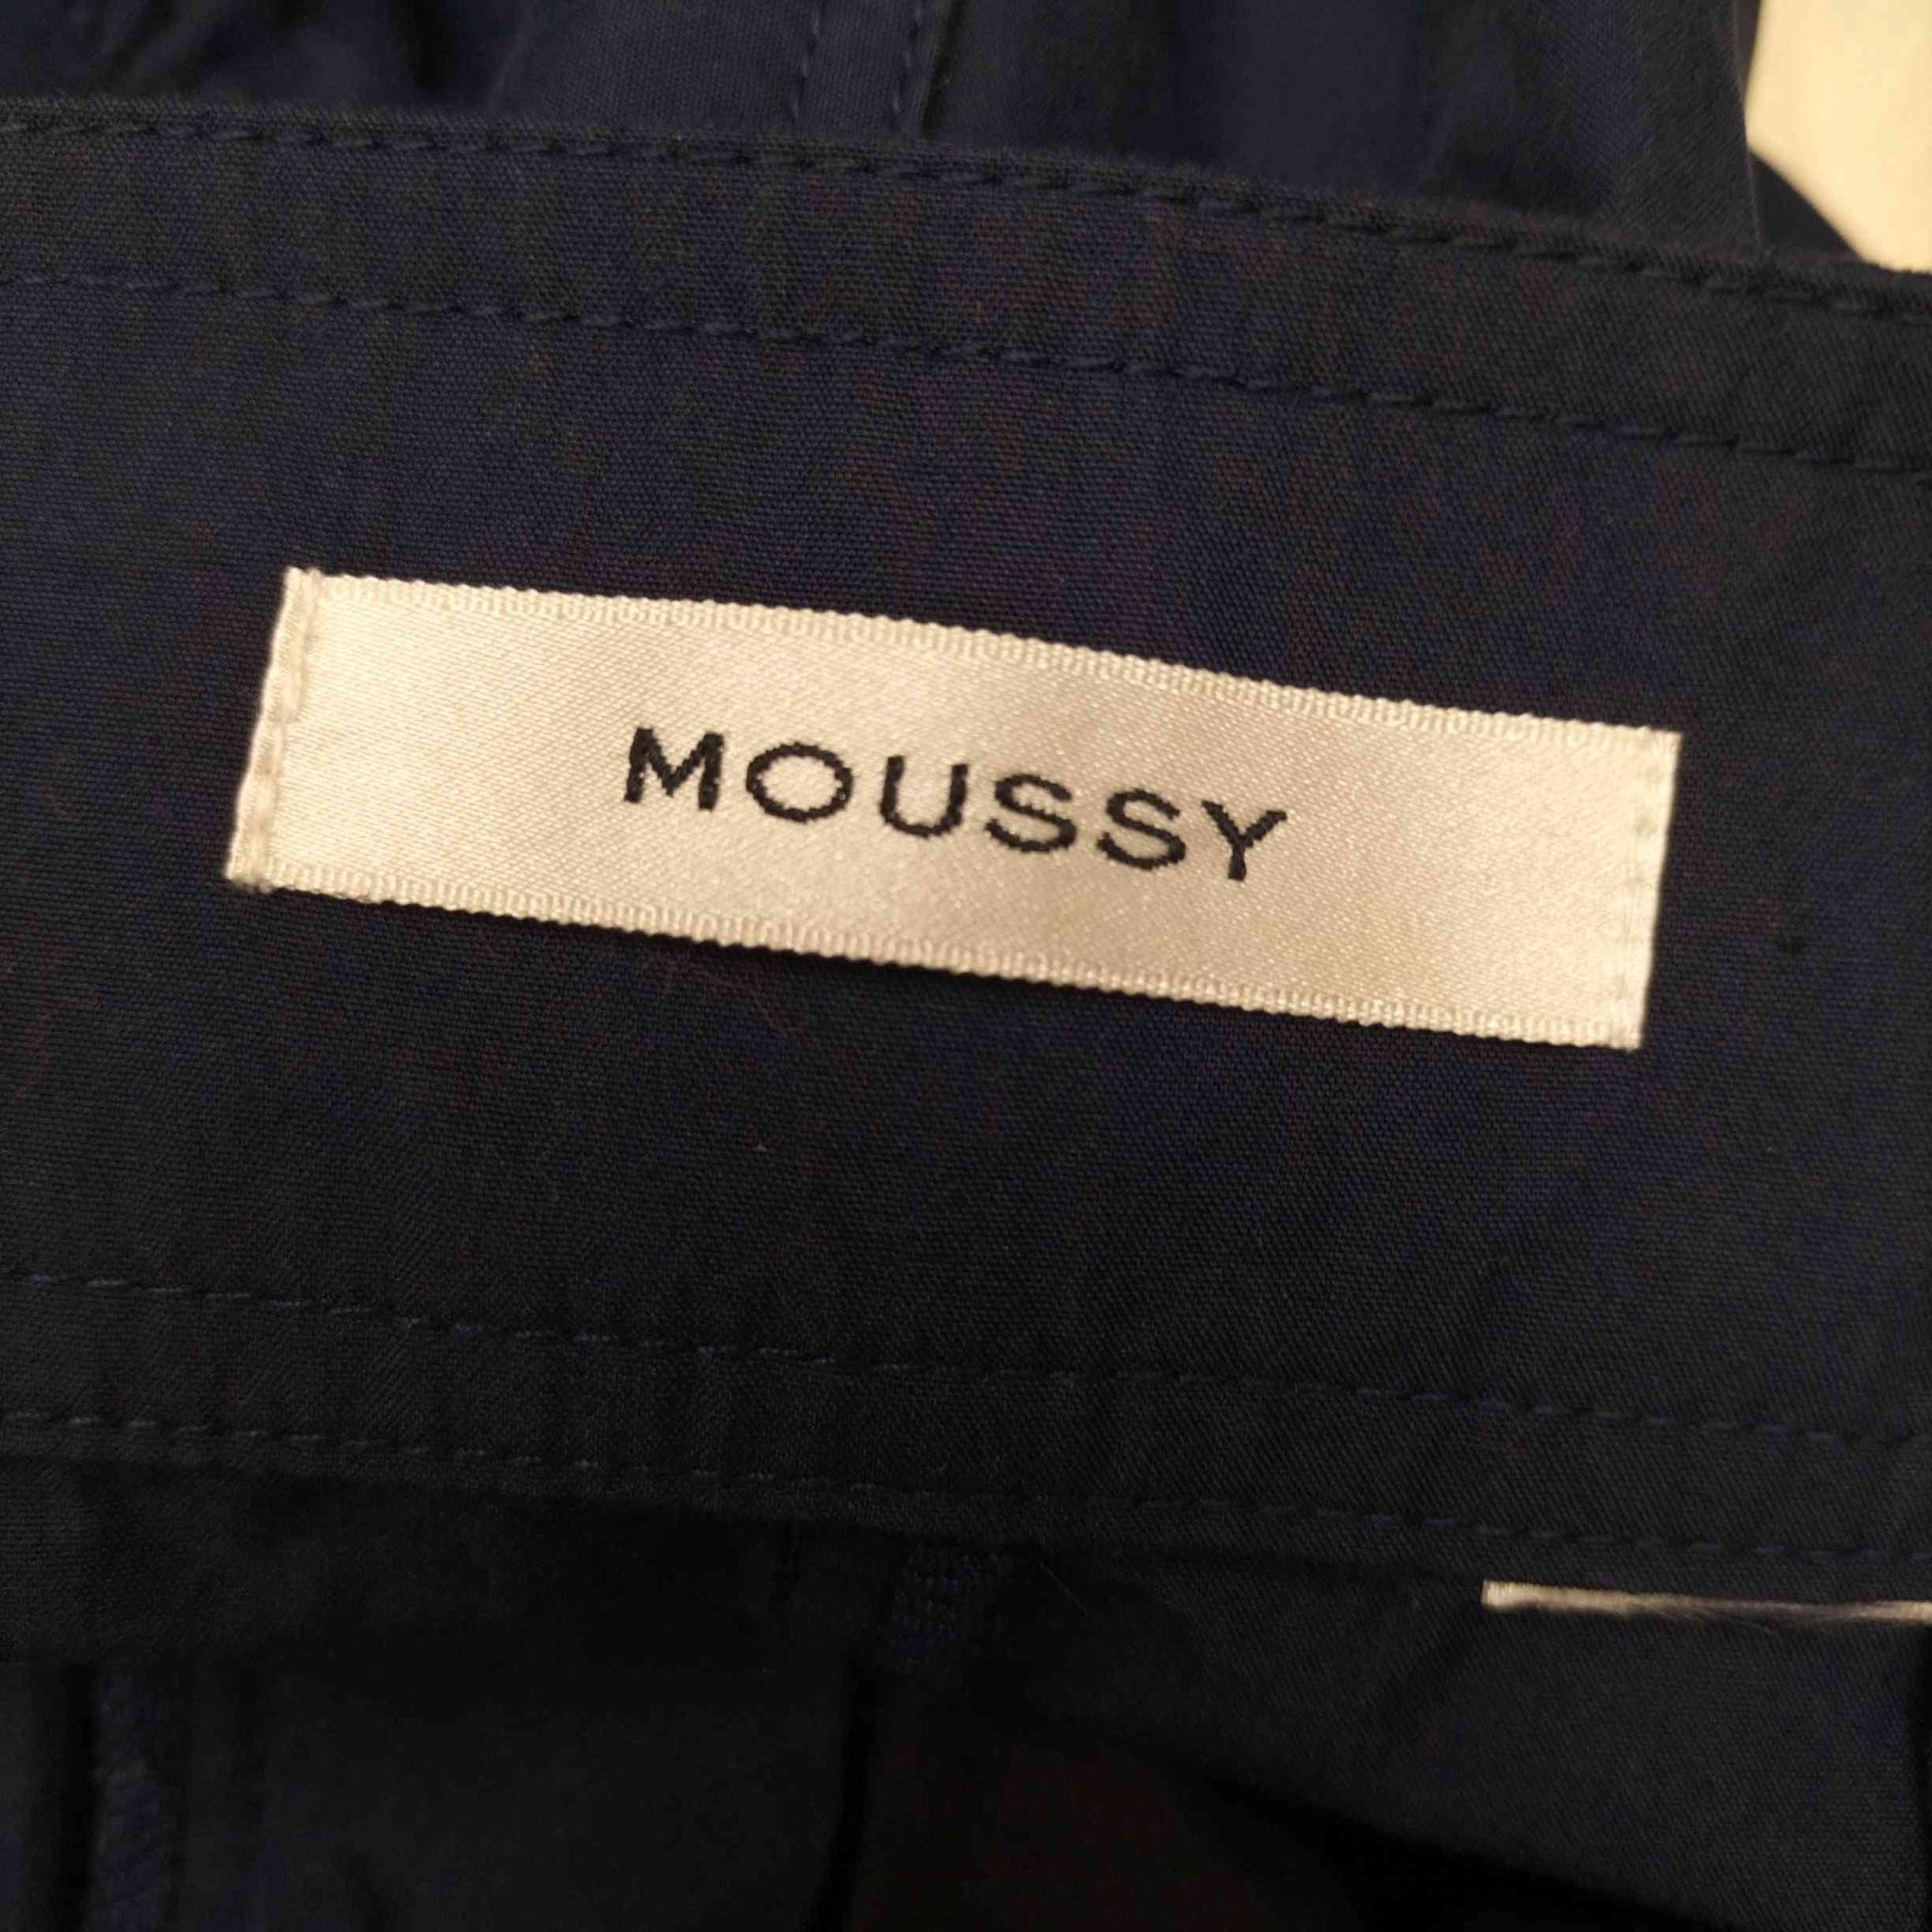 moussy(マウジー)ナイロンカーゴパンツ